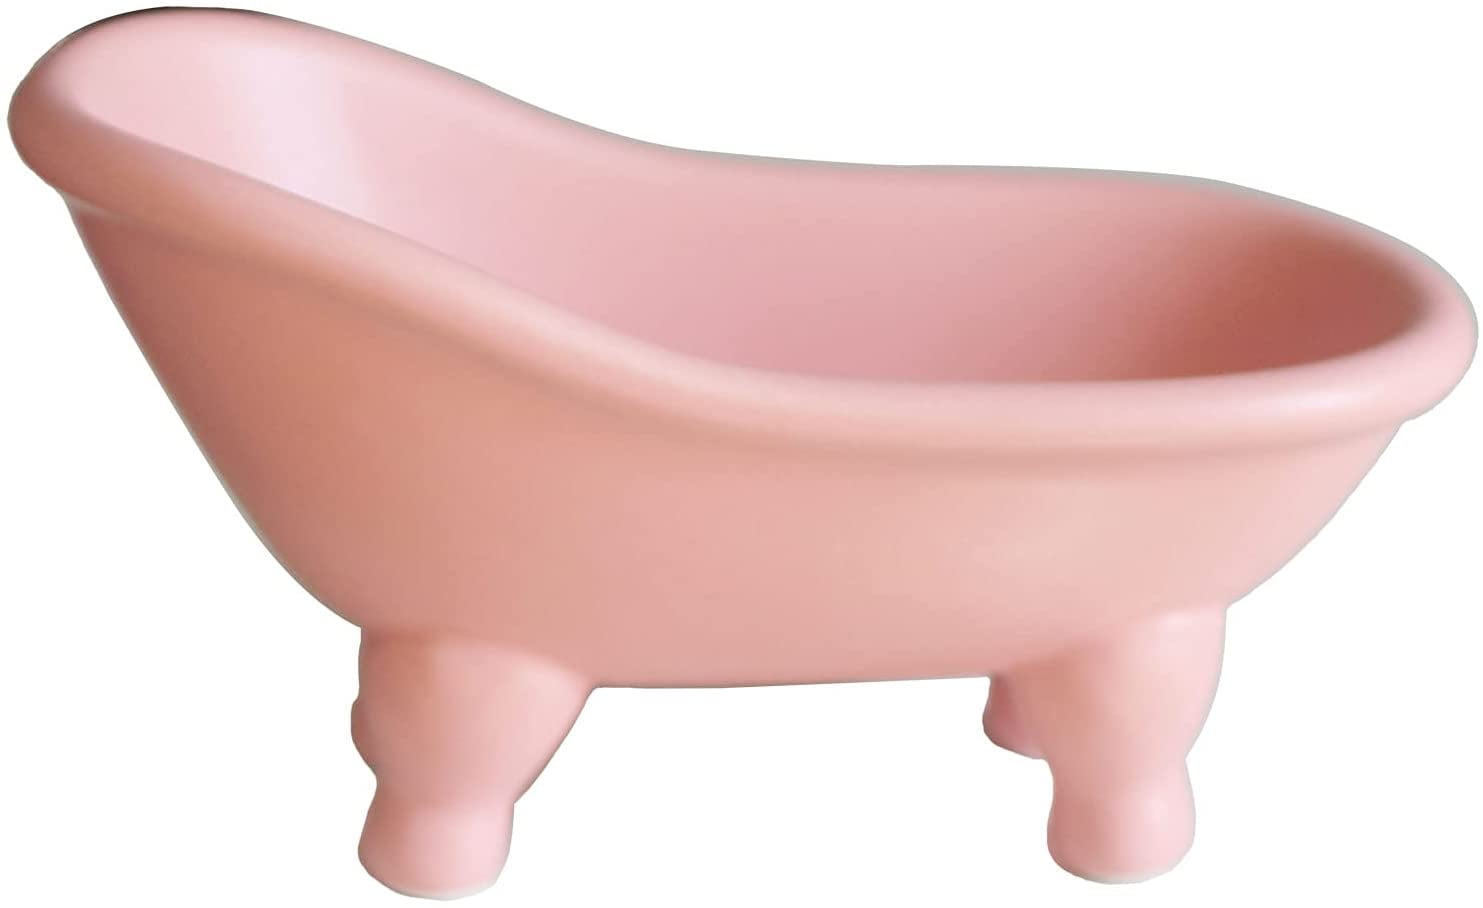 Ceramic Clawfoot Bathtub Tub Bar Soap Dish Holder for Bathroom Shower W Drainer 